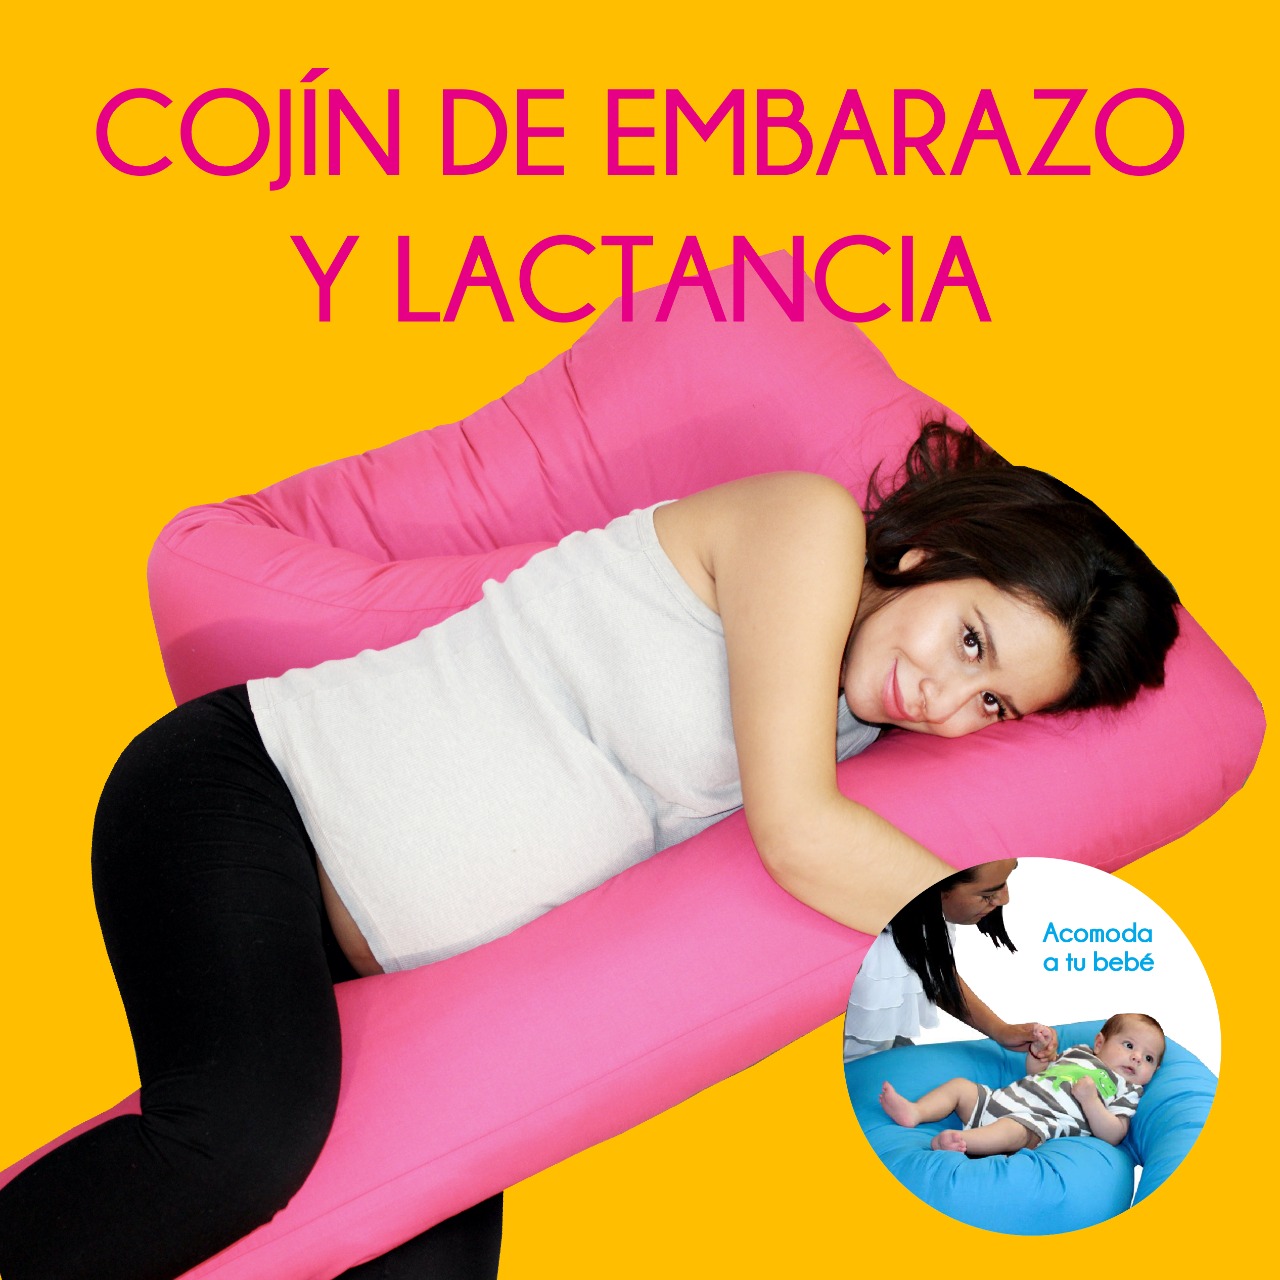 Cojín de embarazo y lactancia - Aldonza Cojines